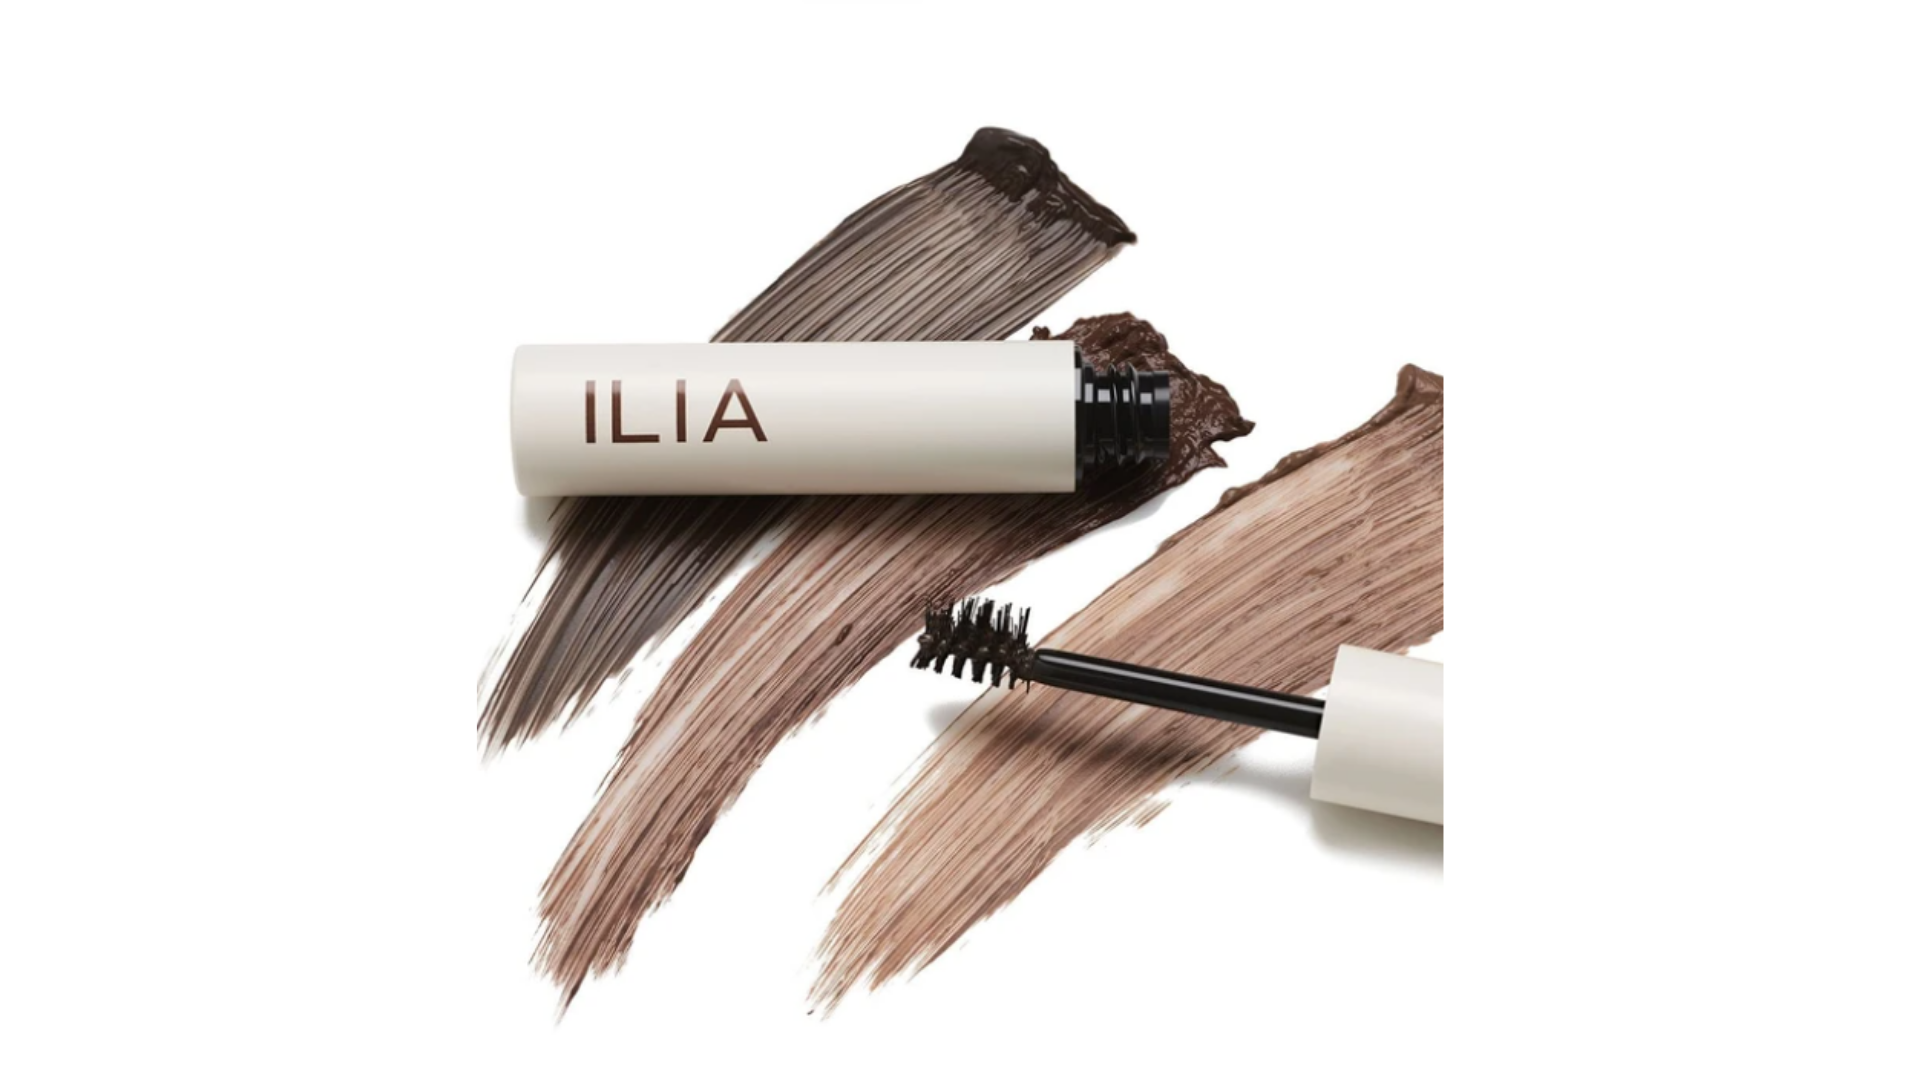 ILIA Complexion Brush